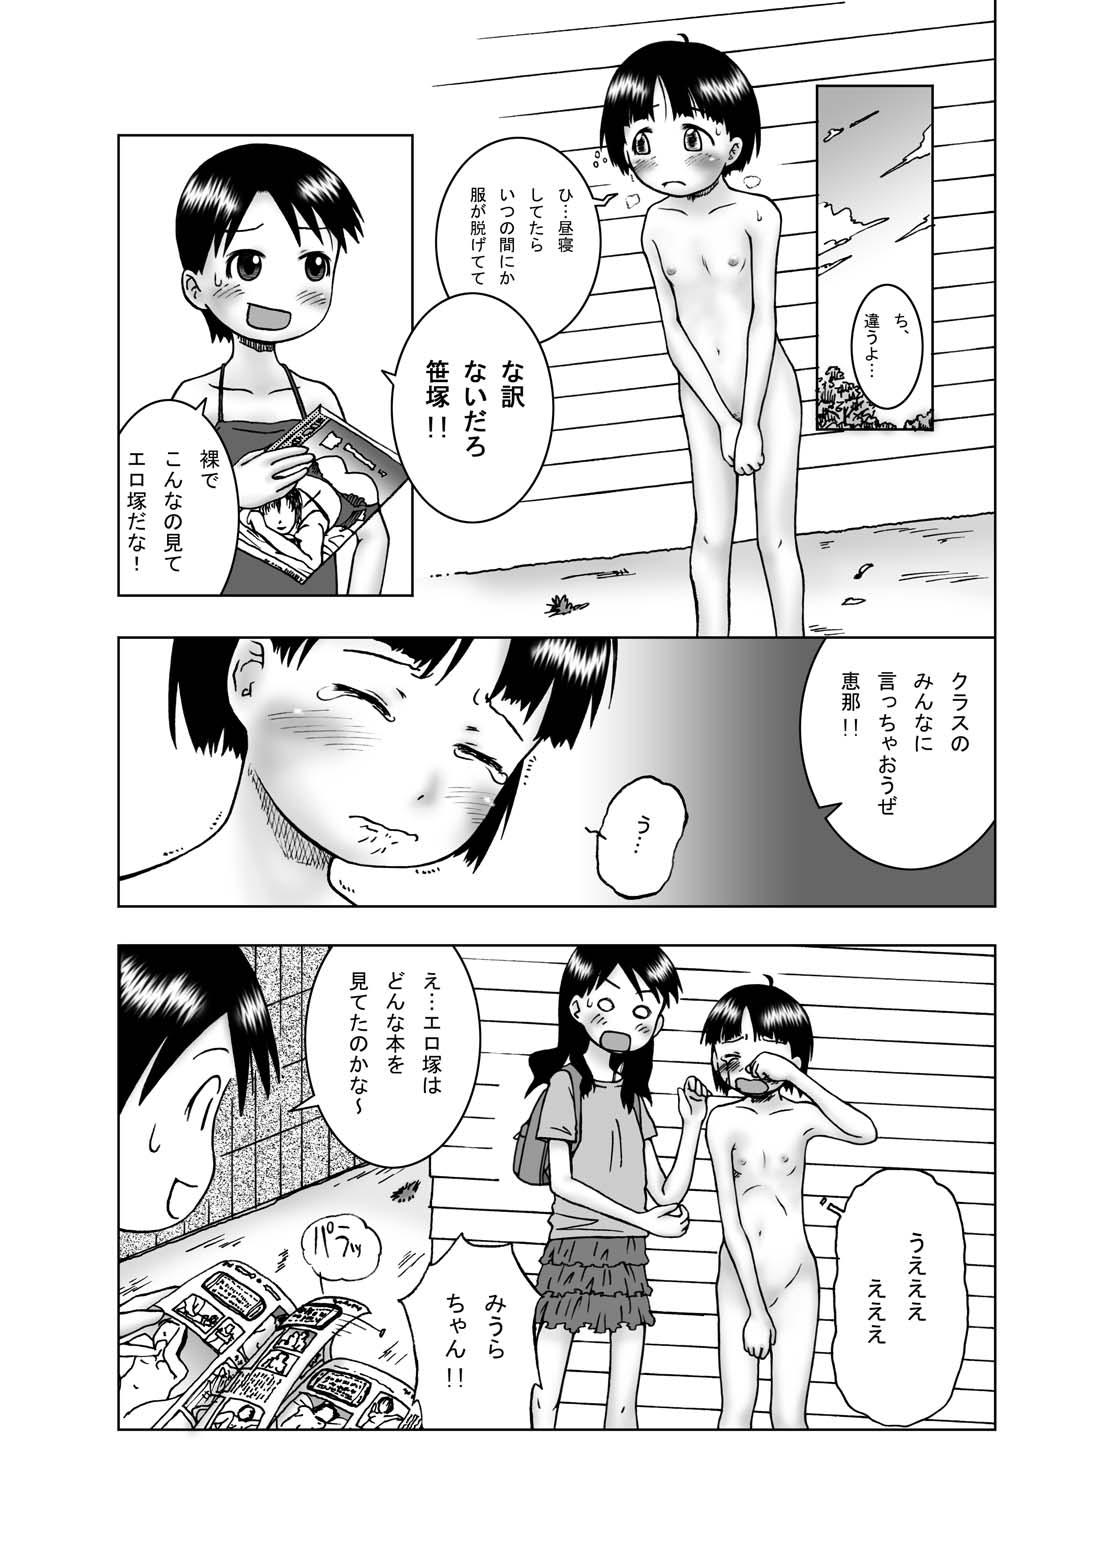 Puba Aya x Haya - Yotsubato Fetish - Page 5